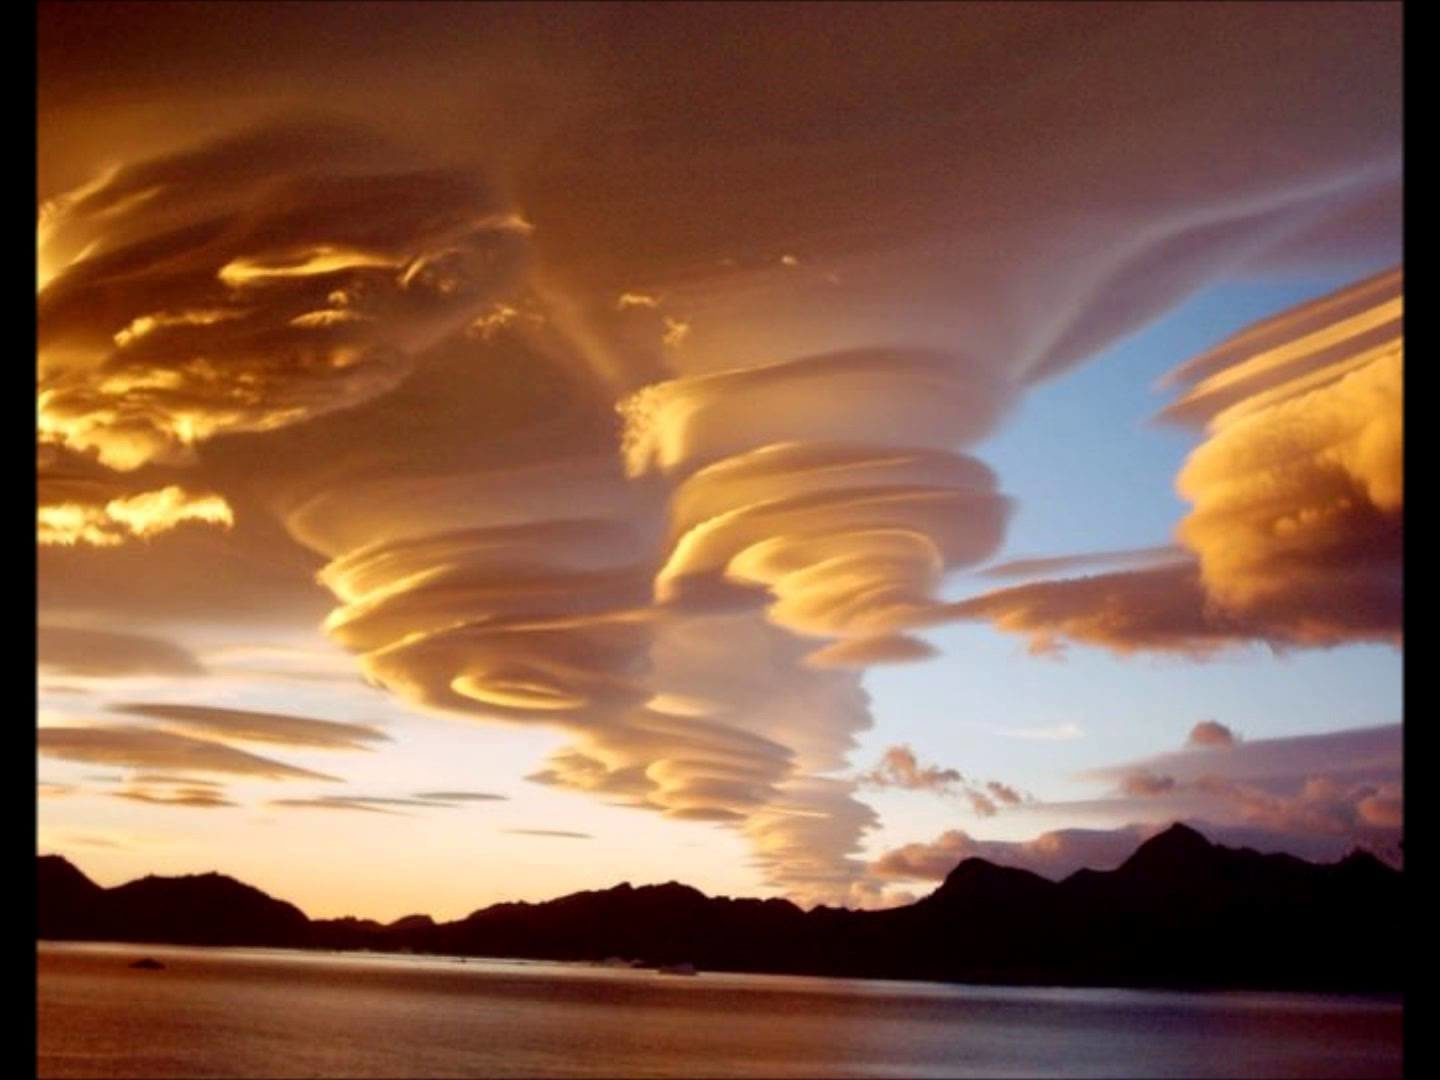 Spiral clouds